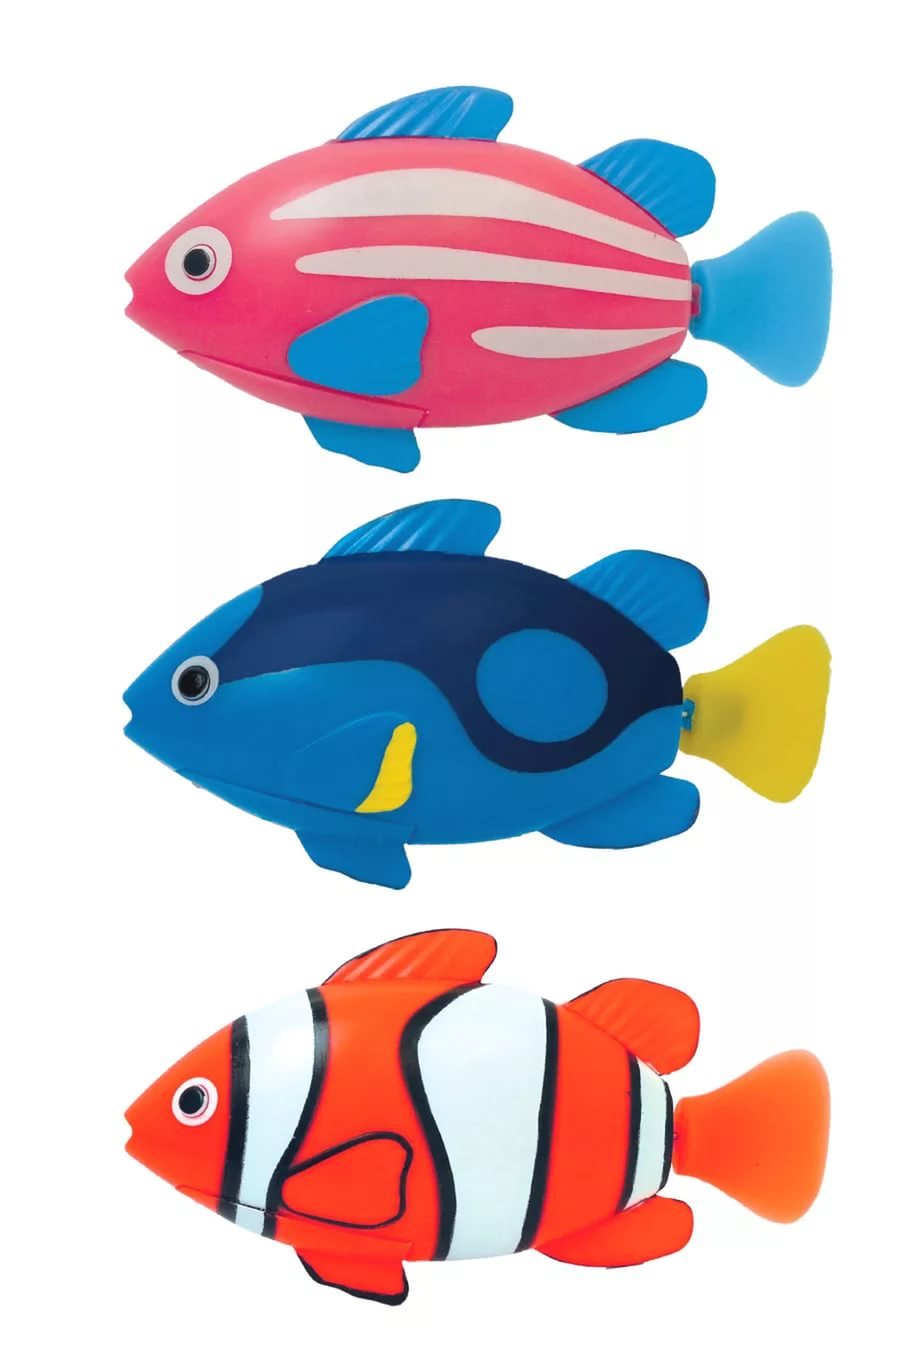 Рыба для ребенка 2. Игрушка "рыбка". Рыбки игрушки для детей. Игрушечные рыбки для детей. Игрушечный набор рыбок.